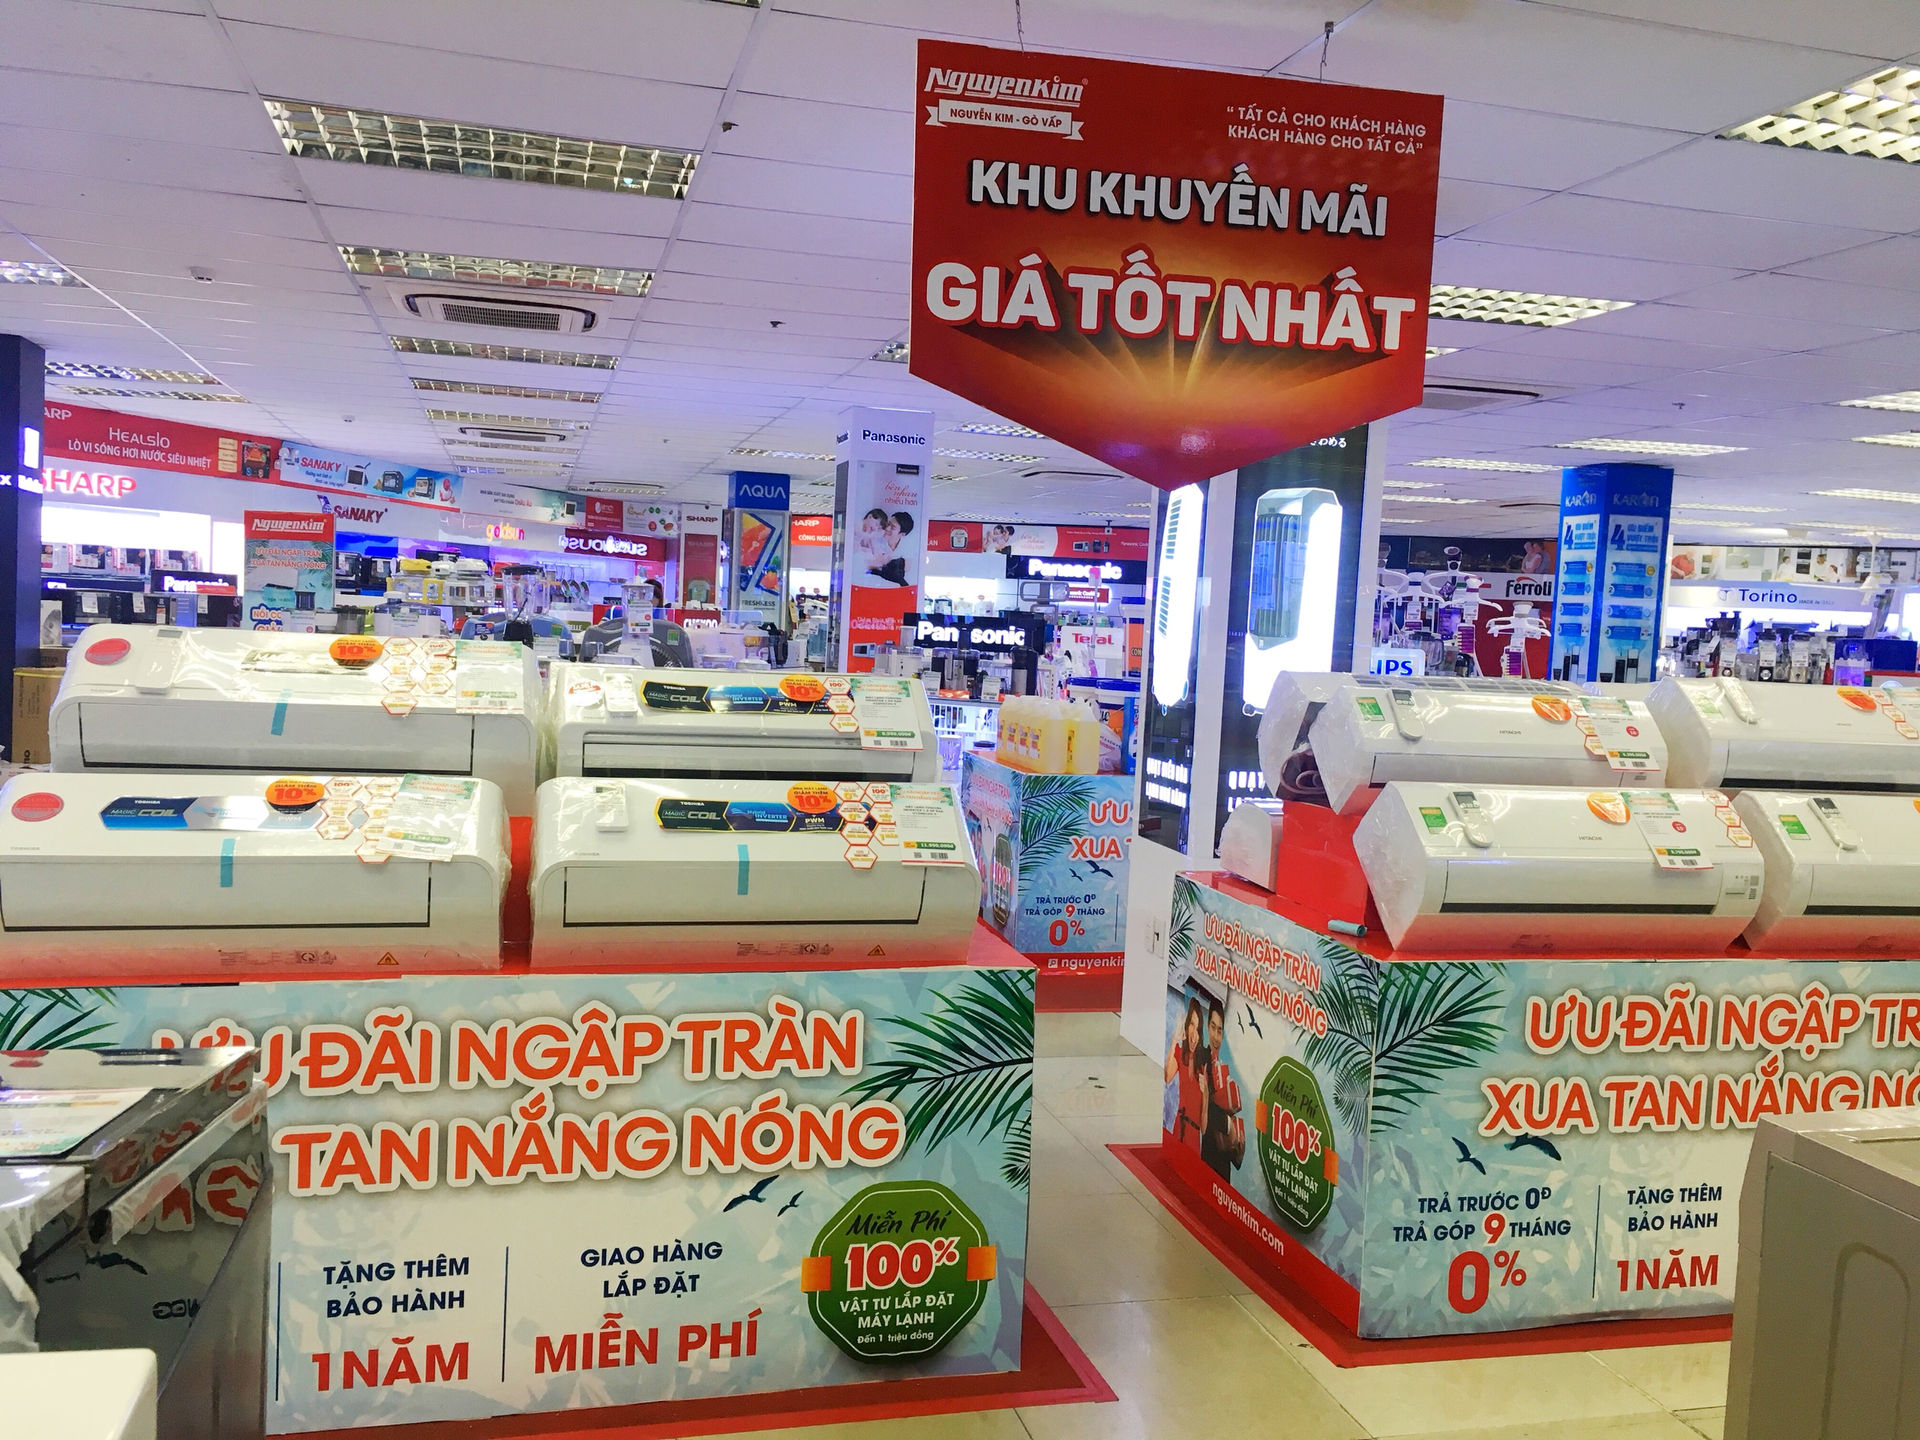 Nhiều khuyến mãi về giá thành và dịch vụ hậu mãi cho các sản phẩm máy lạnh ở Siêu thị điện máy Nguyễn Kim.